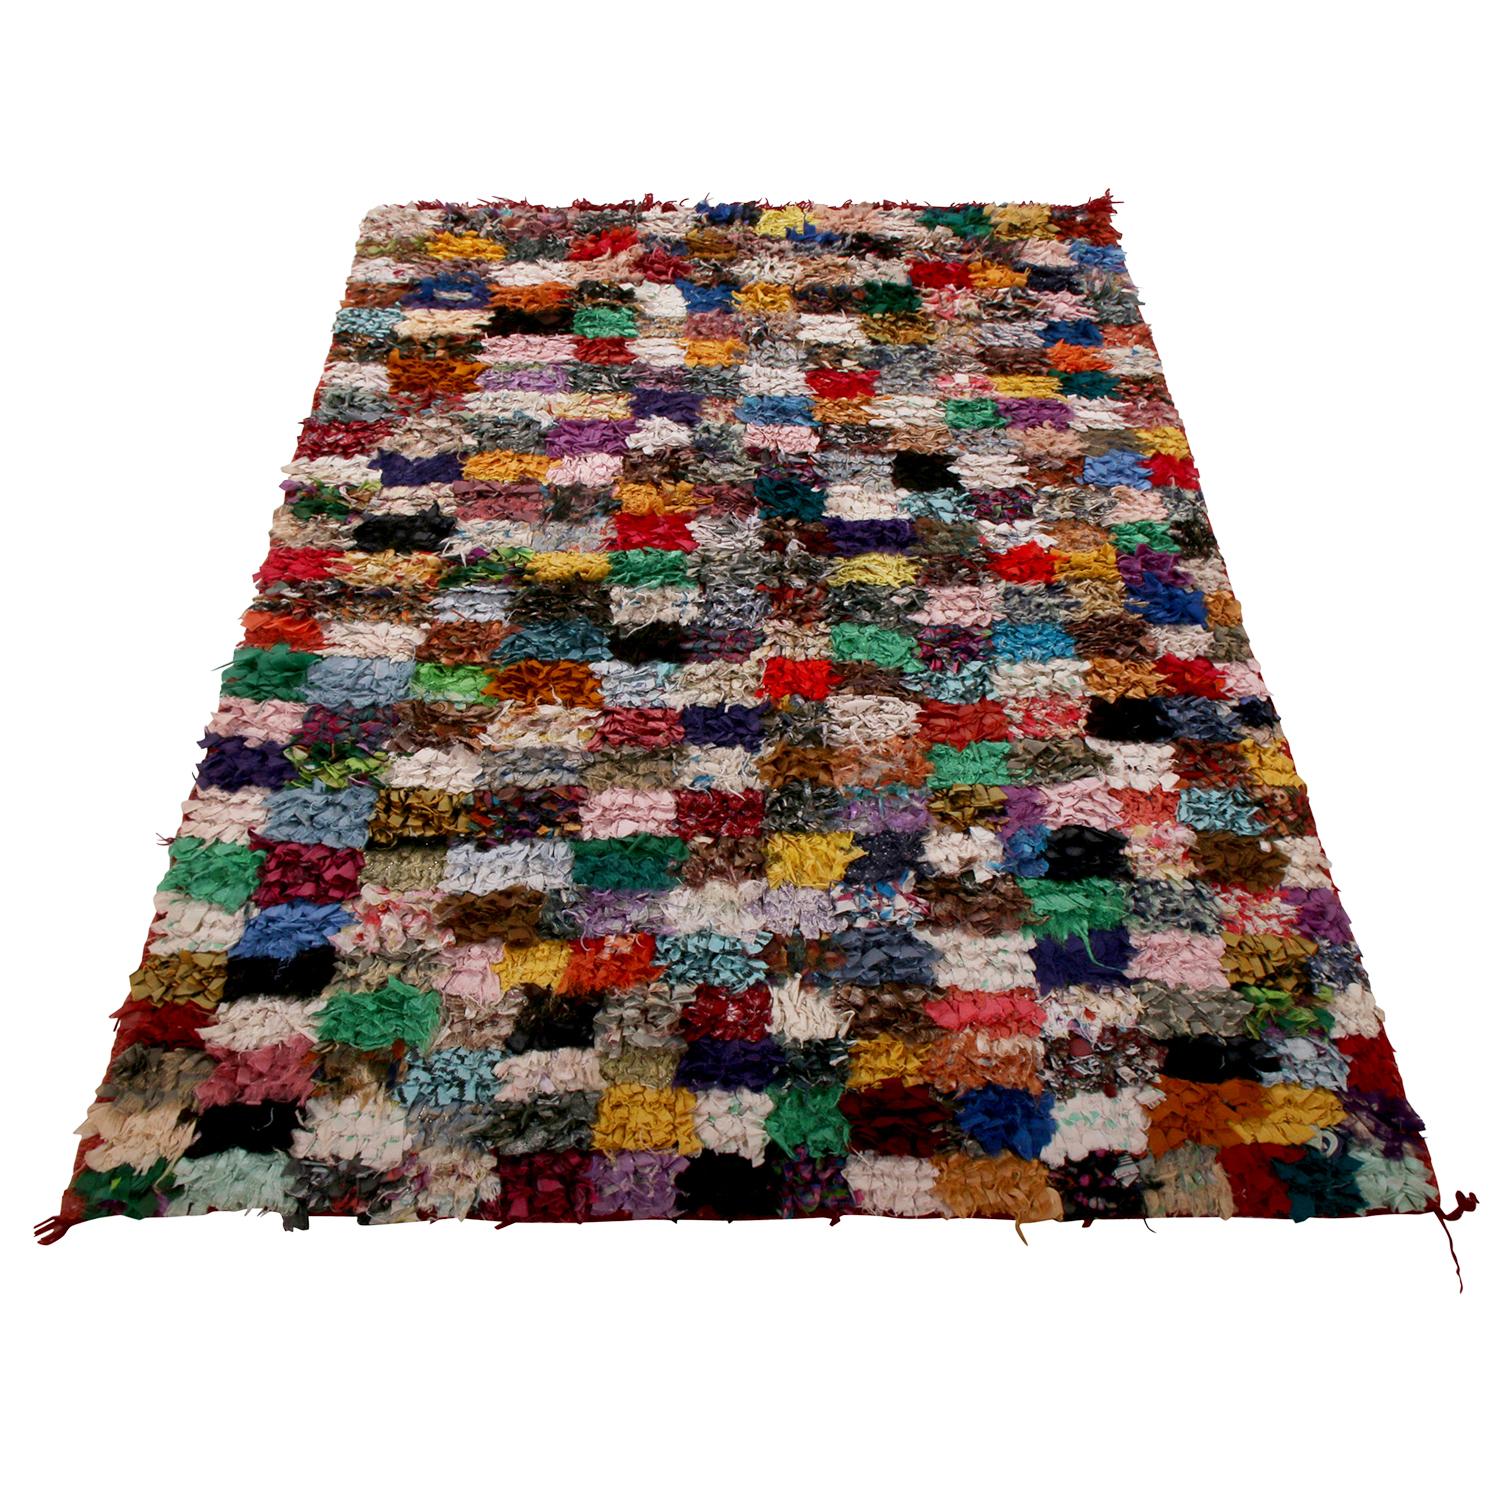 Noué à la main dans un tissu texturé et durable datant des années 1950-1960, ce tapis berbère marocain vintage bénéficie du jeu idyllique de géométrie et de couleur célébré par les tisserands tribaux ancestraux responsables de sa beauté dans cette